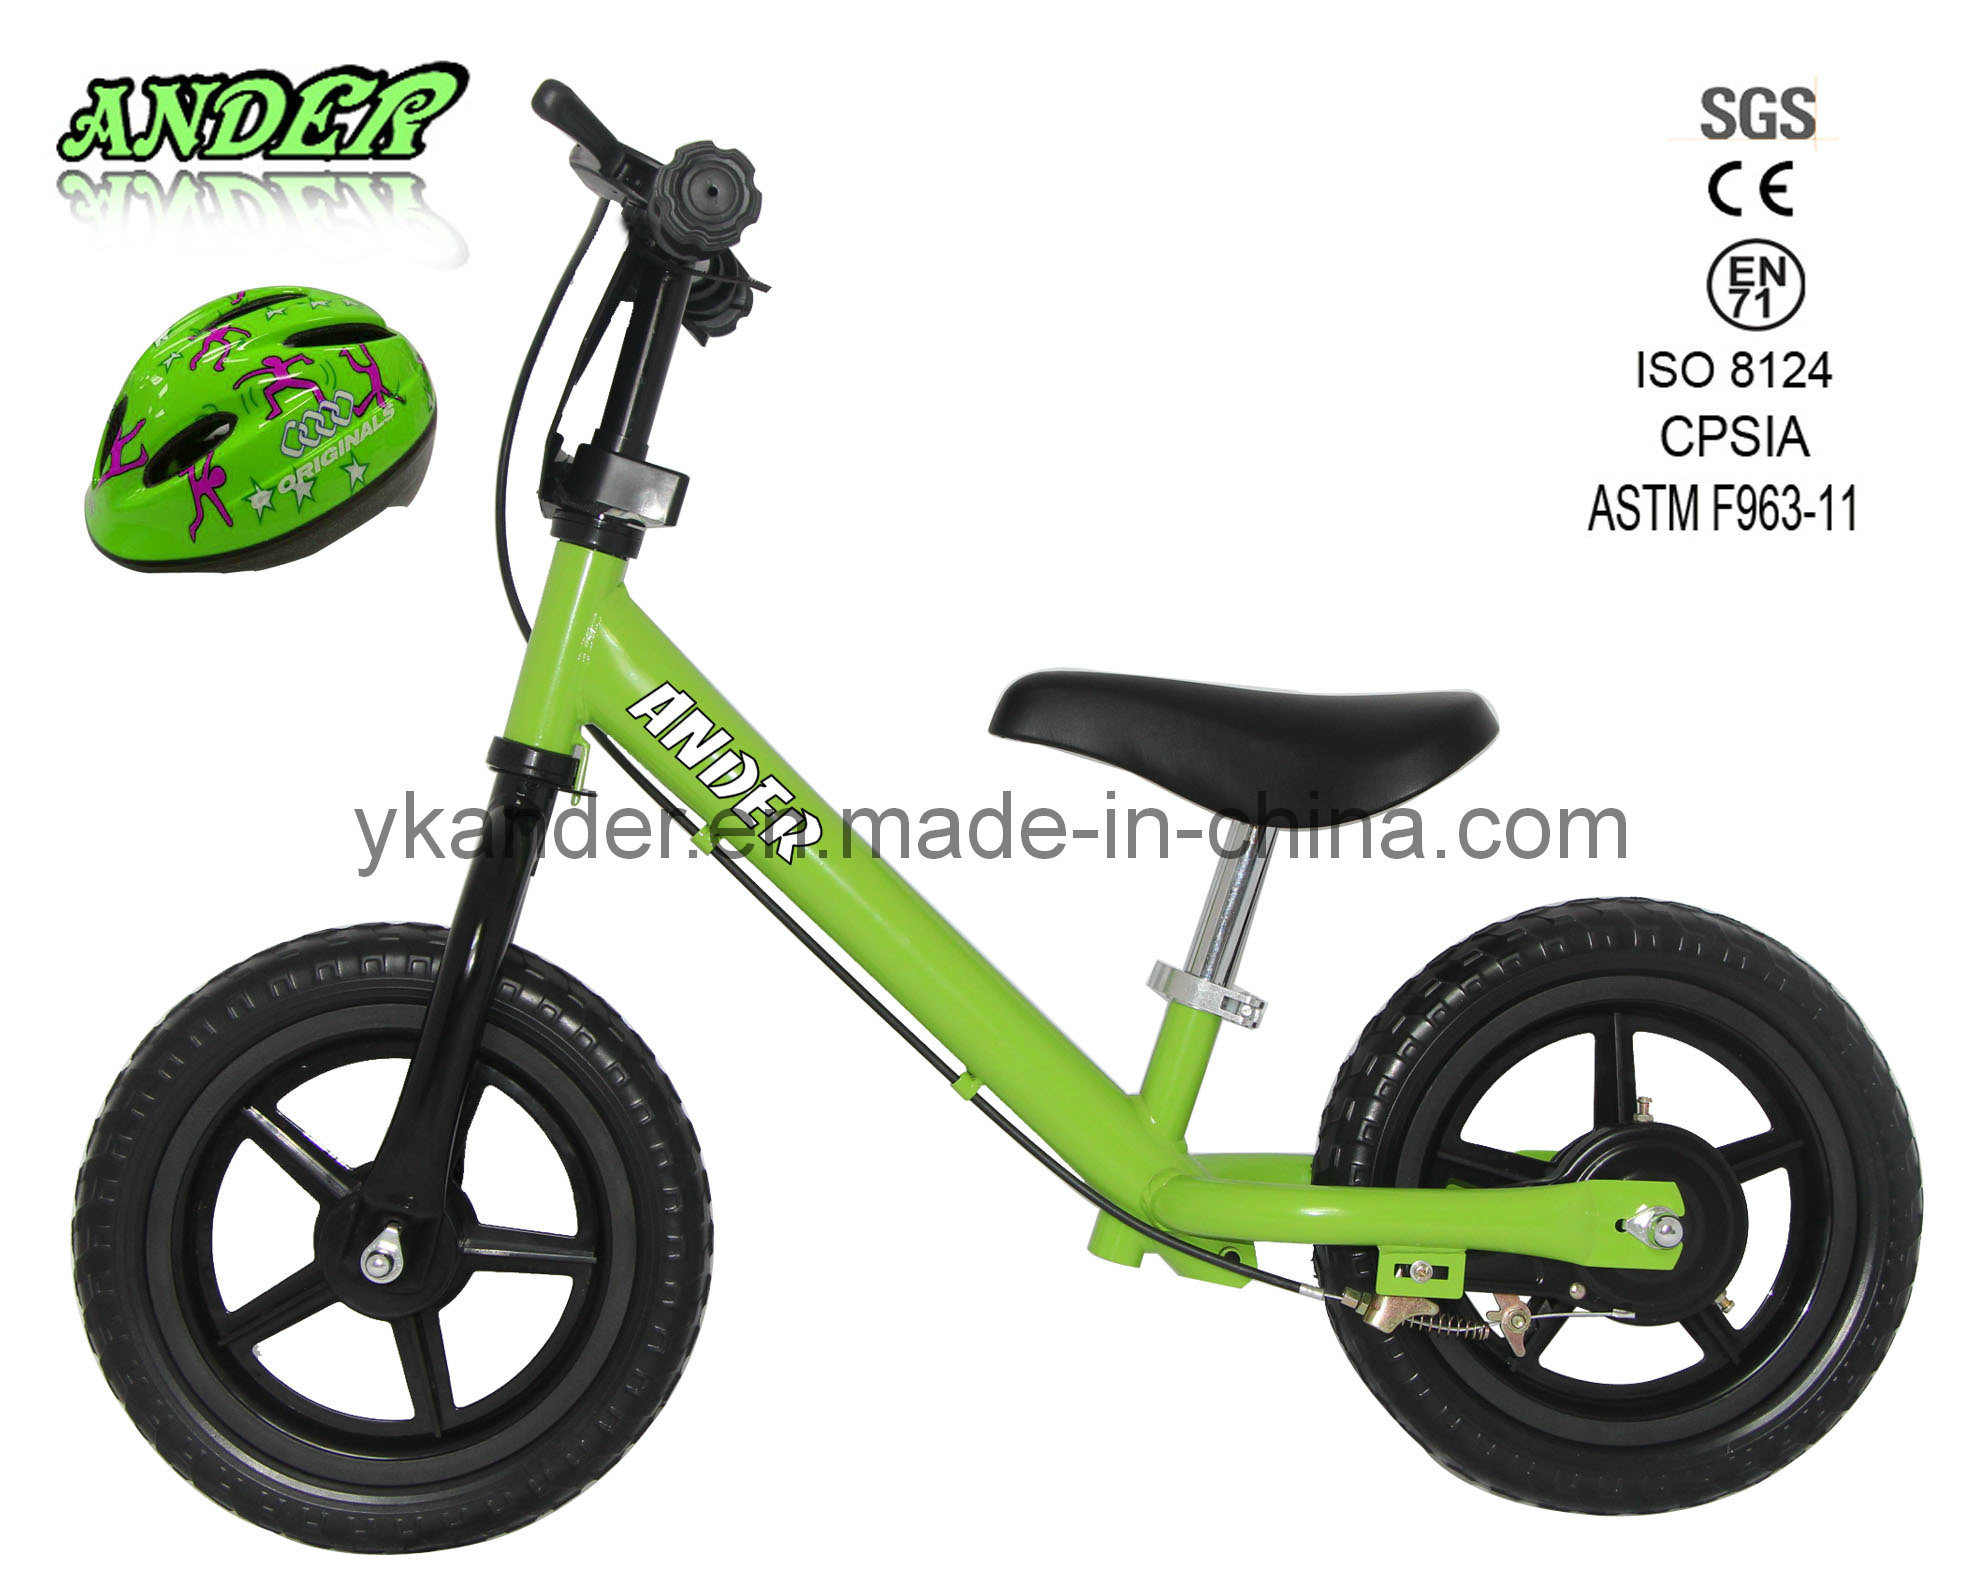 2014 Hot Sale Kid Balance Bike / Stroller Bike for Baby with Safe Helmet (AKB-1202)